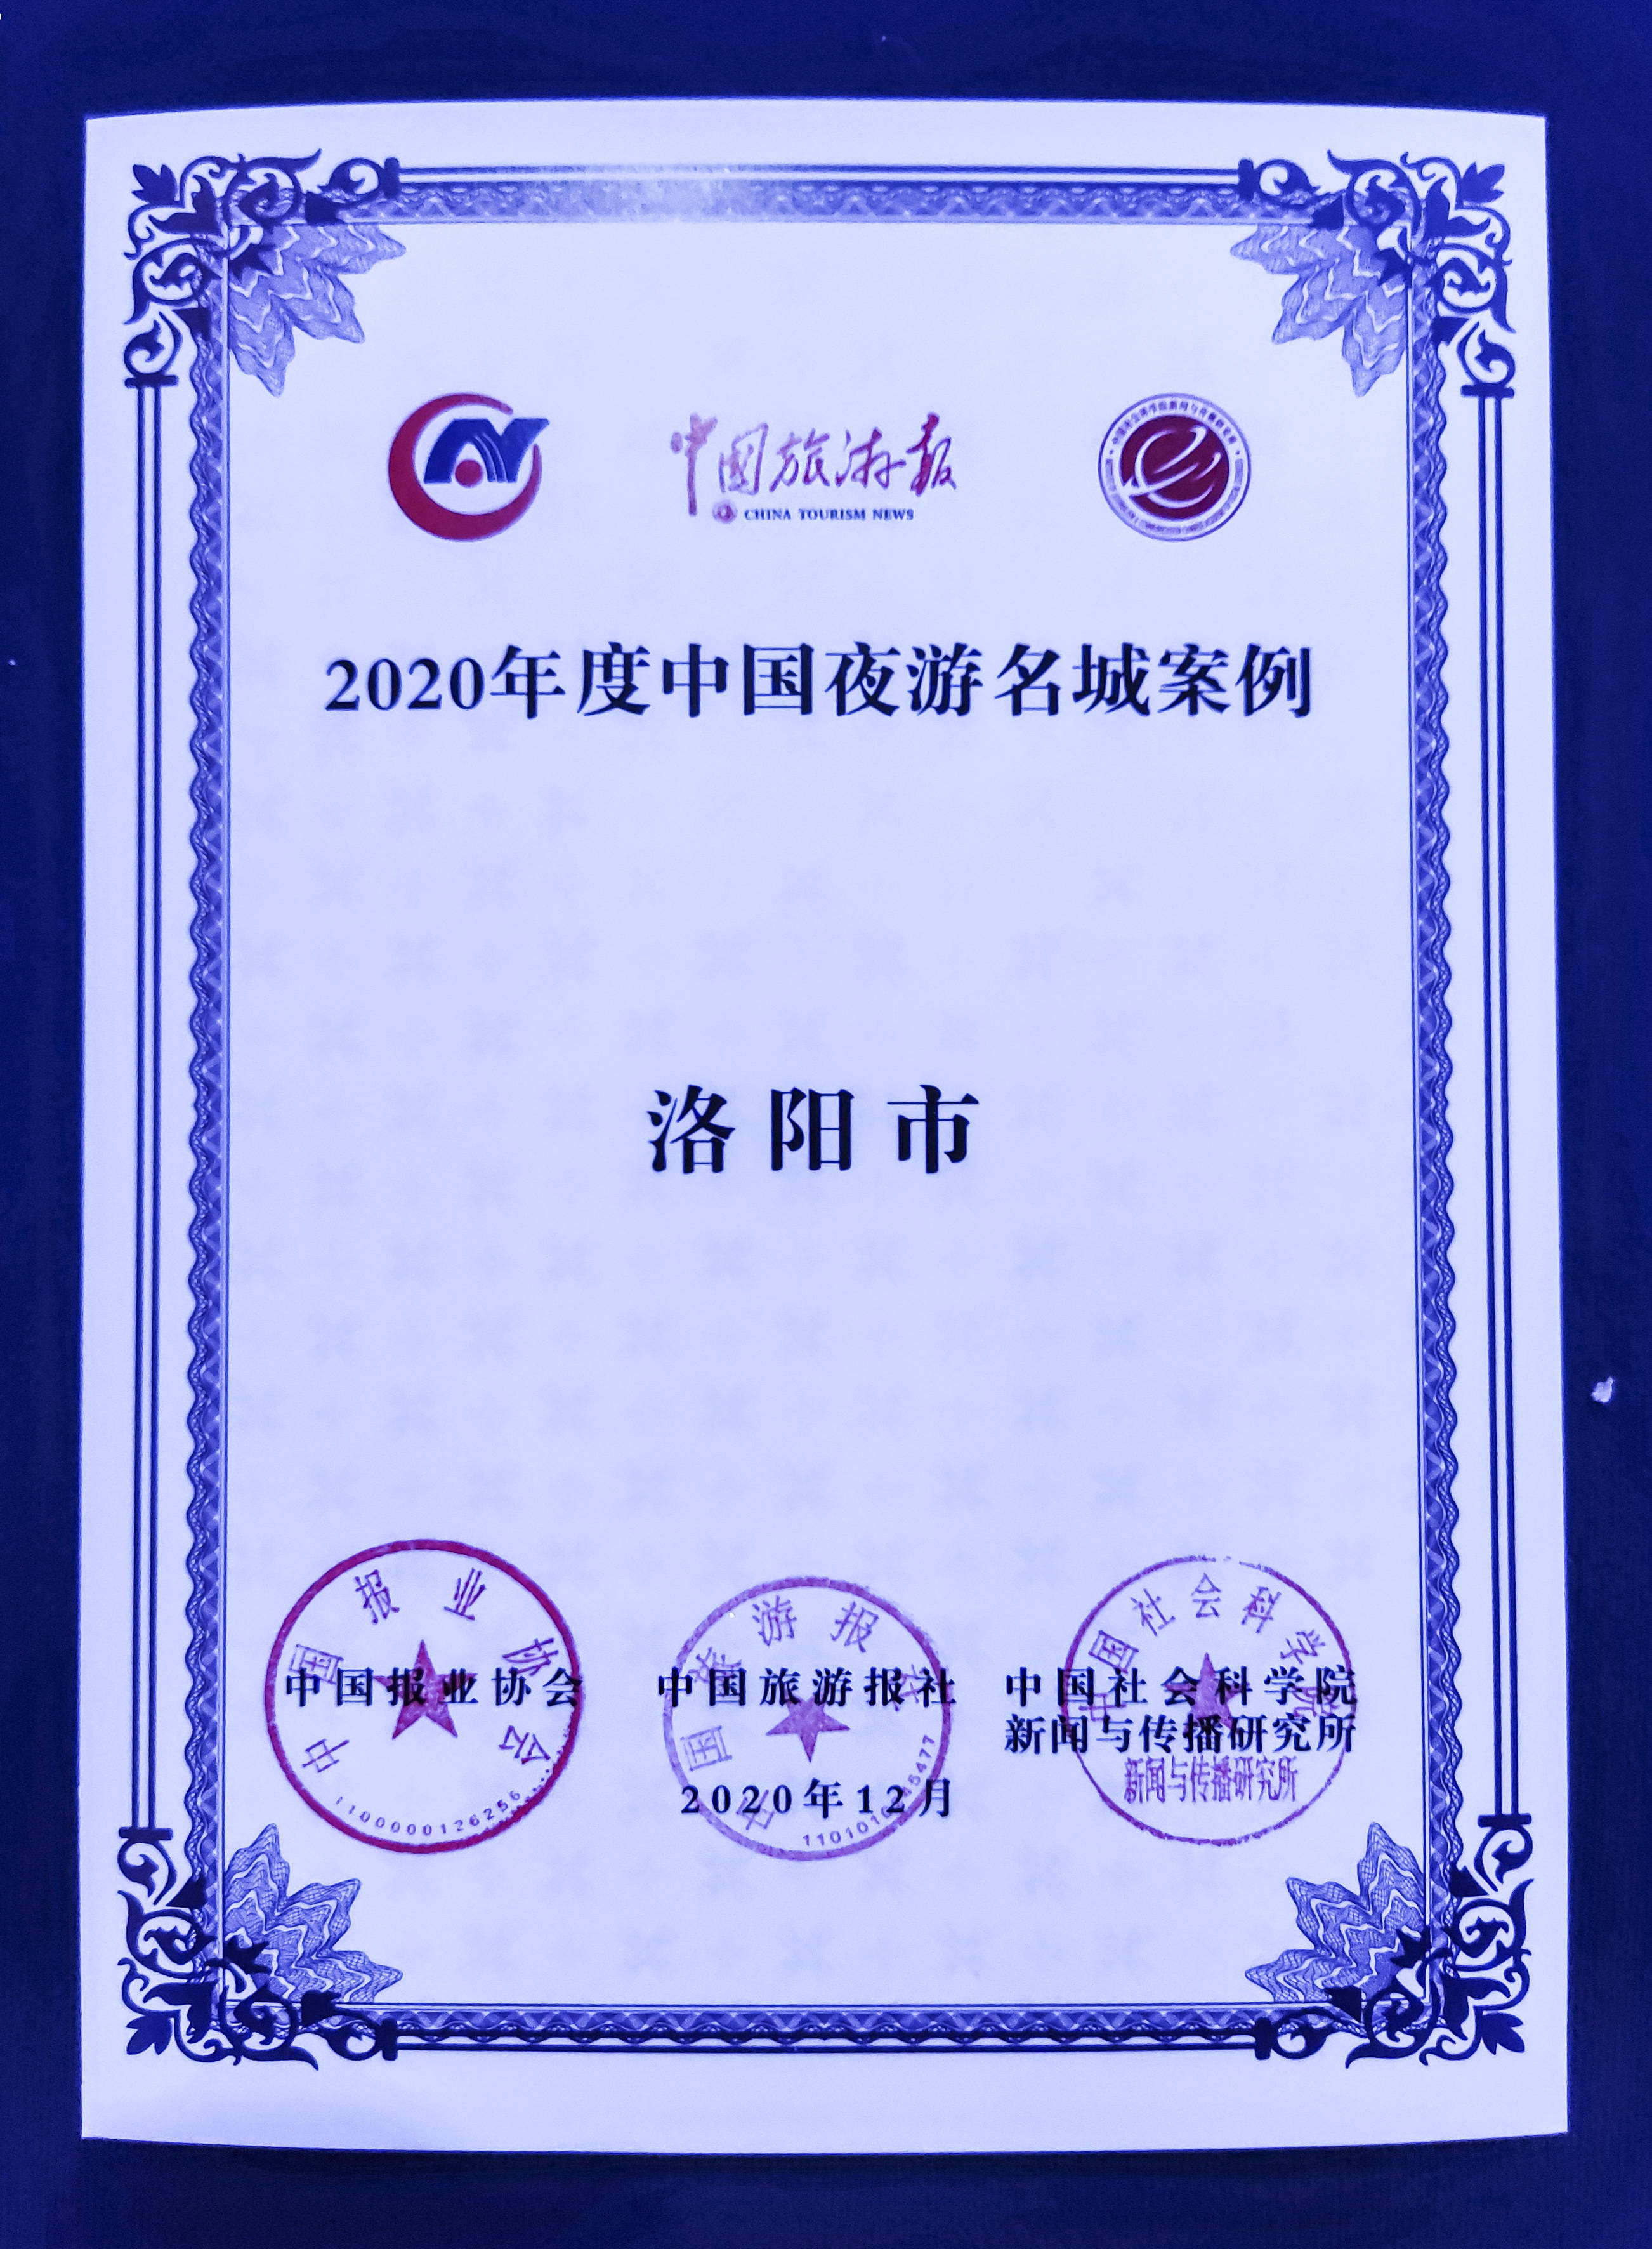 洛阳荣膺“2020年度中国夜游名城”